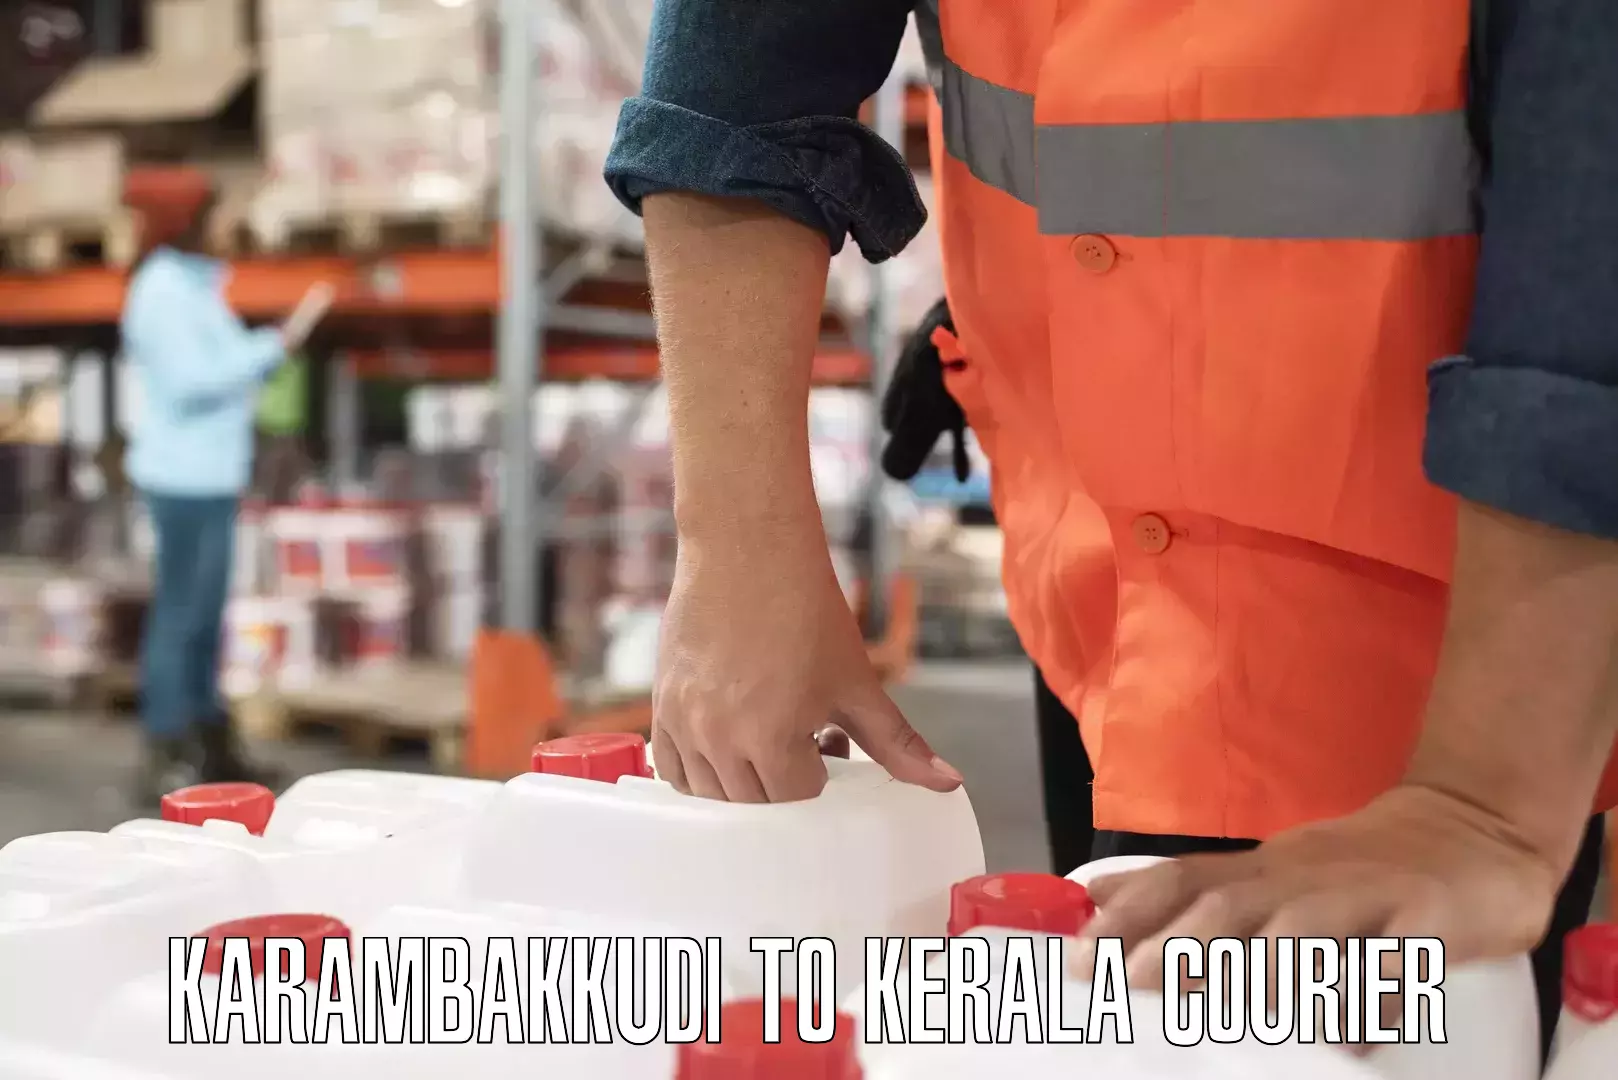 Efficient cargo handling Karambakkudi to Karunagappally